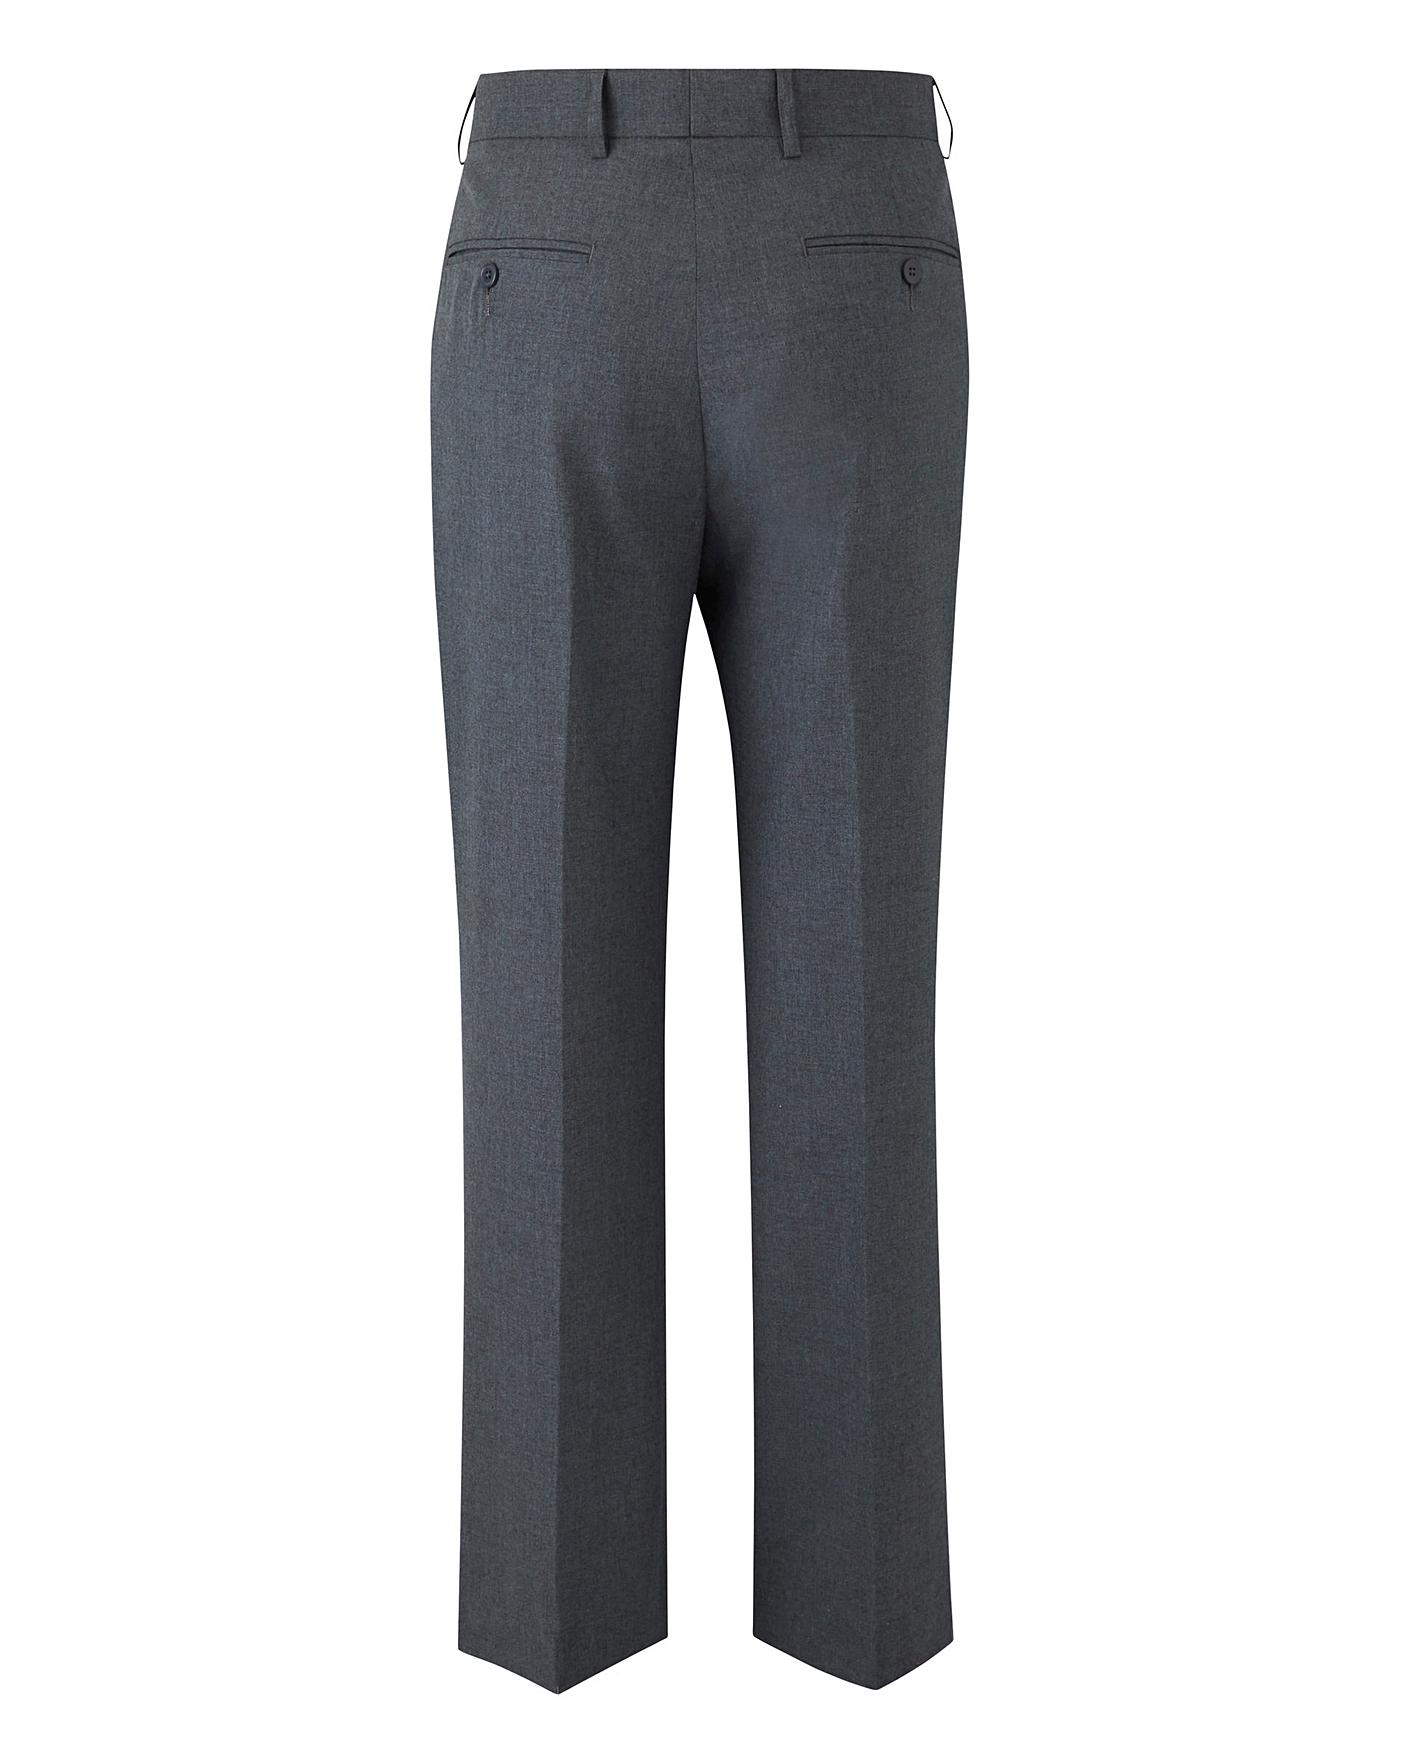 Grey Plain Front Reg Fit Trousers | J D Williams